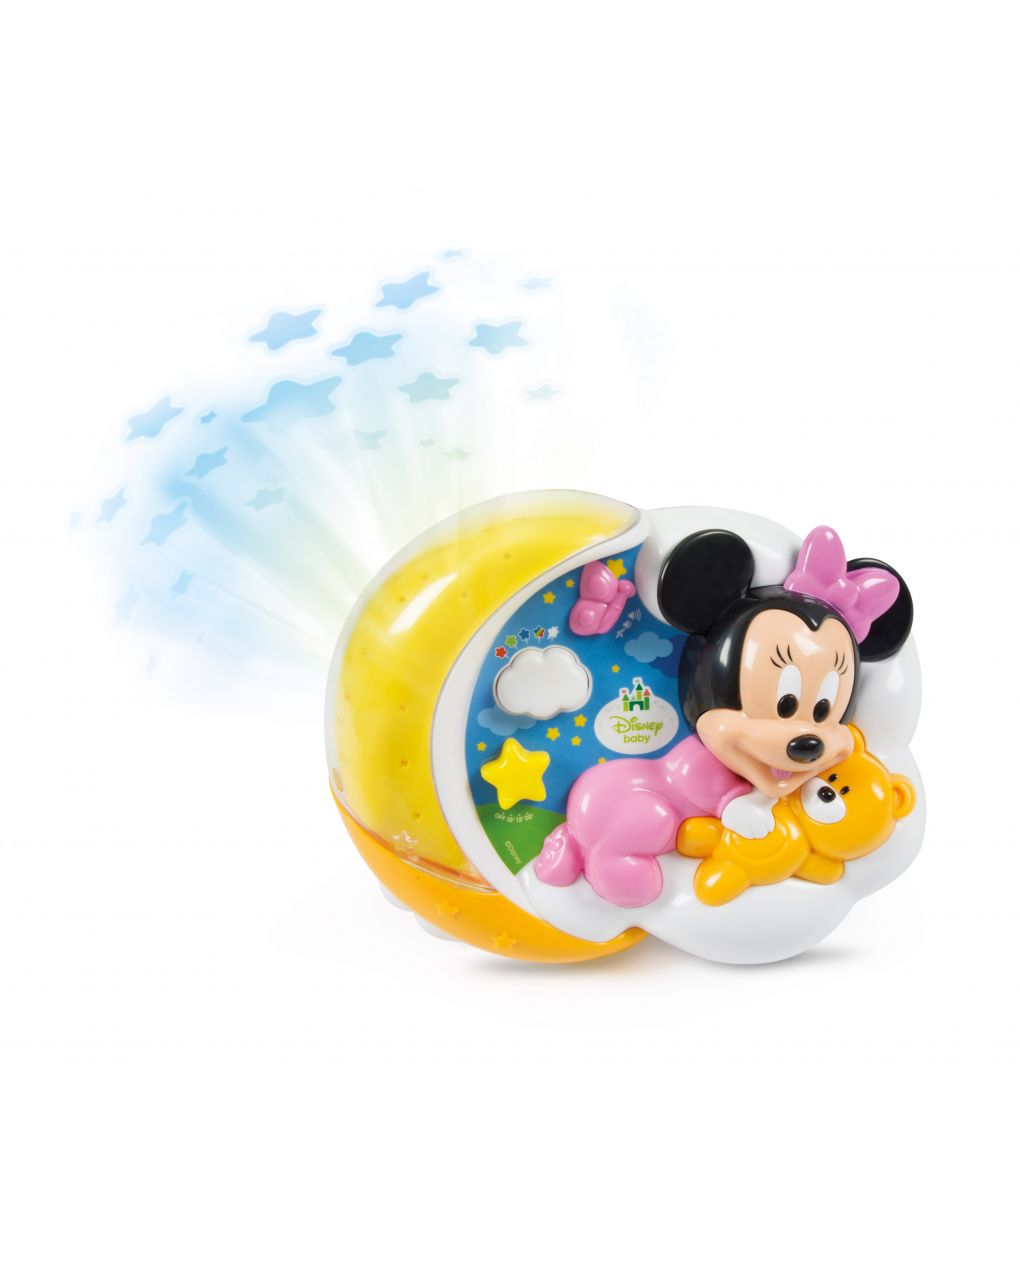 Disney baby - baby minnie proyector estrellas mágicas - Clementoni